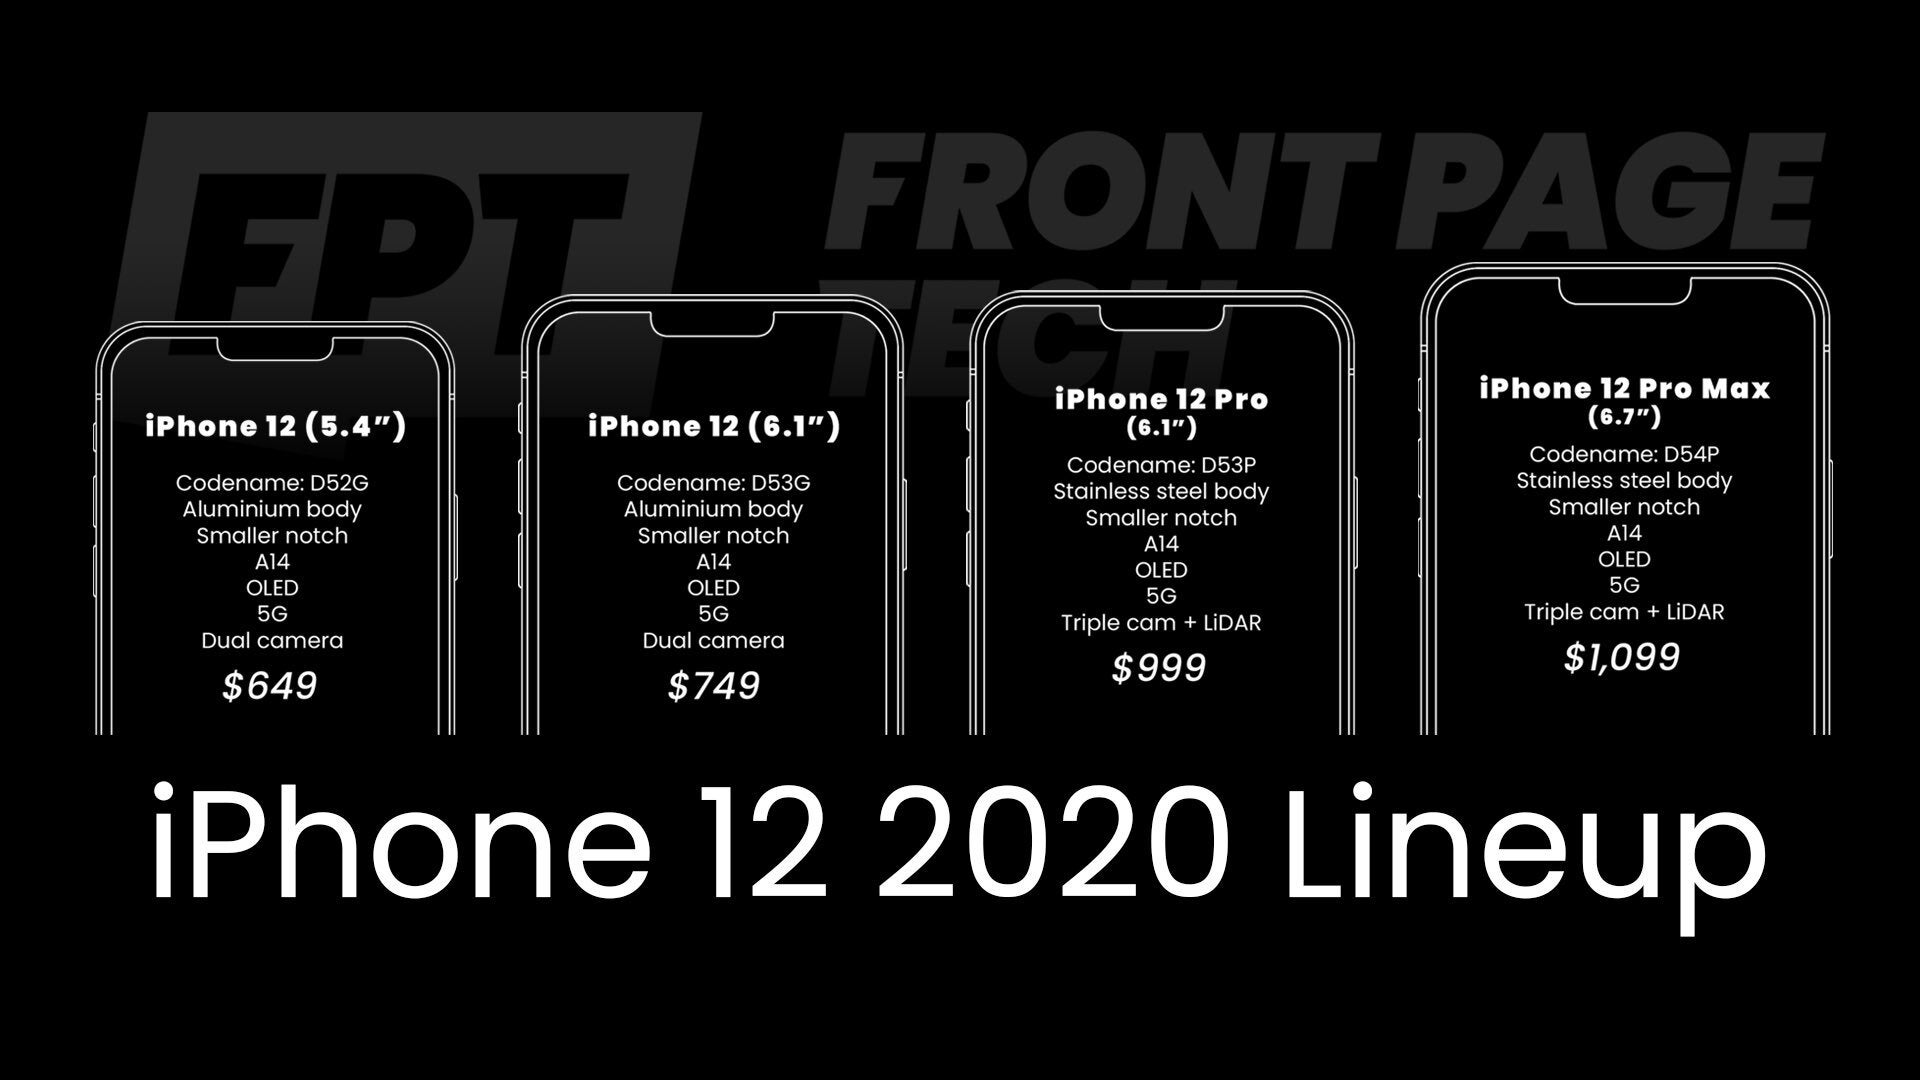 Massive iPhone 12 leak reveals impressive pricing for 5G iPhones